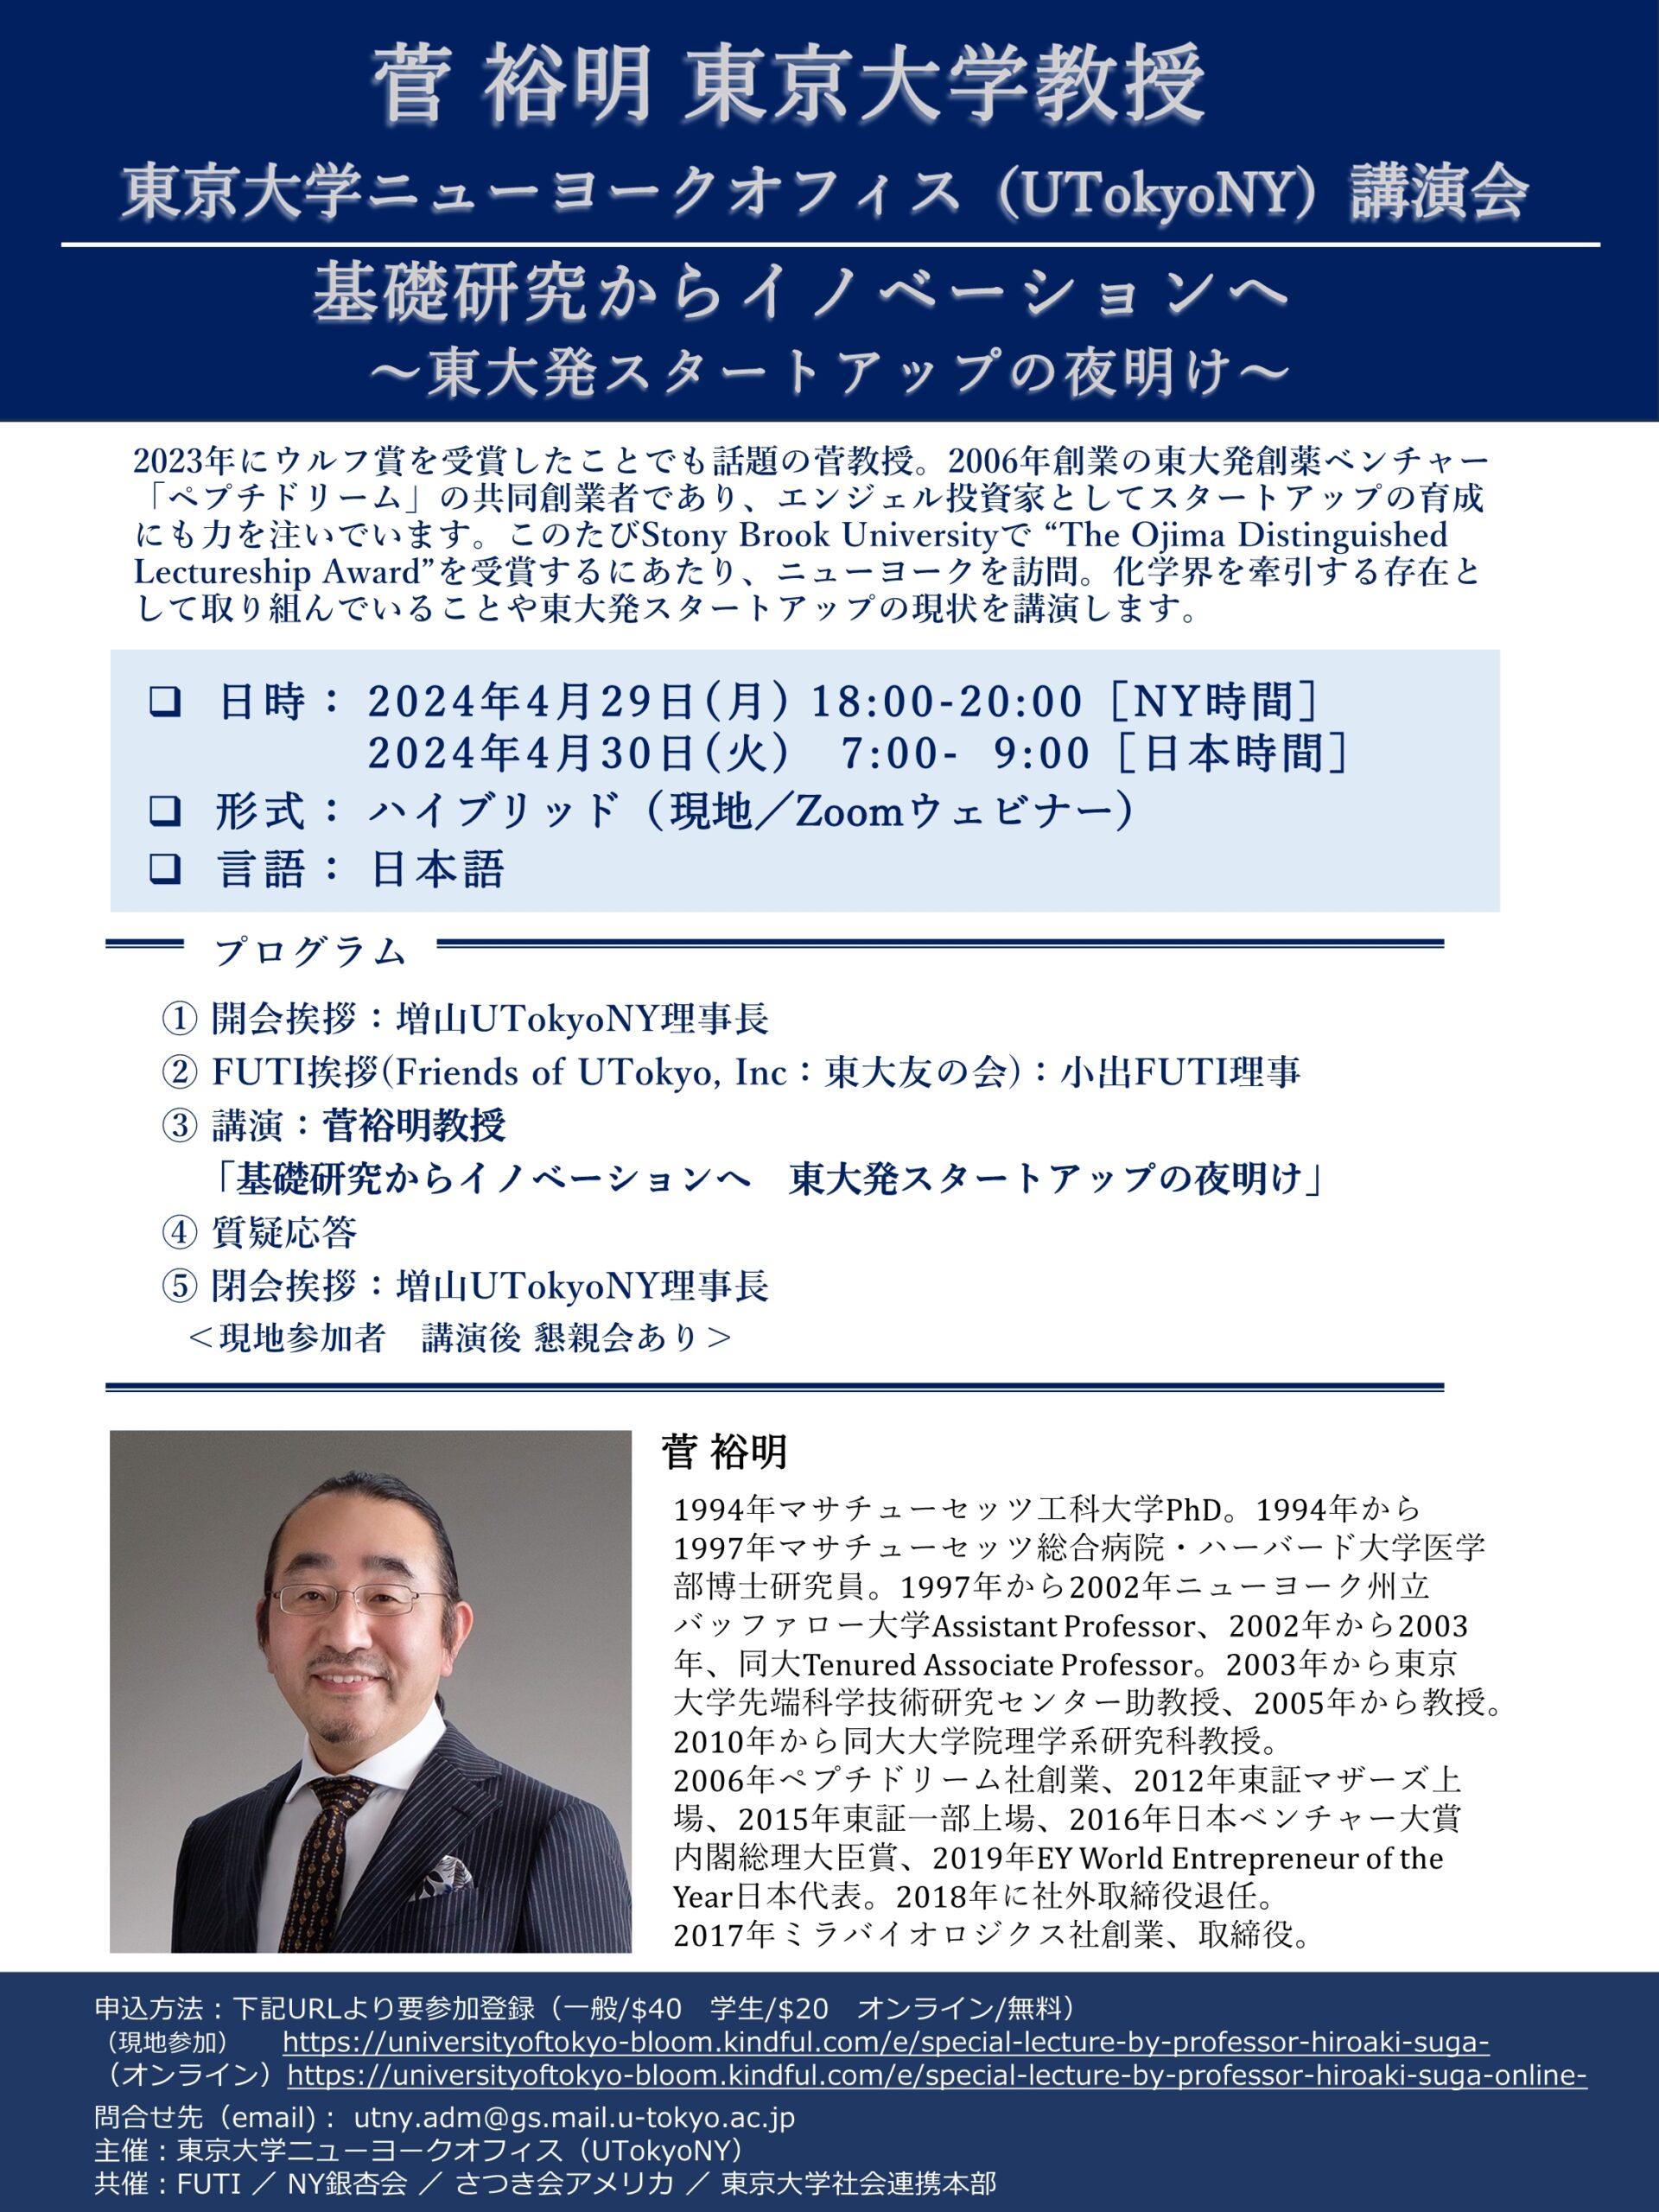 菅裕明 東京大学教授講演会 「基礎研究からイノベーションへ～東大発スタートアップの夜明け～」のお知らせ